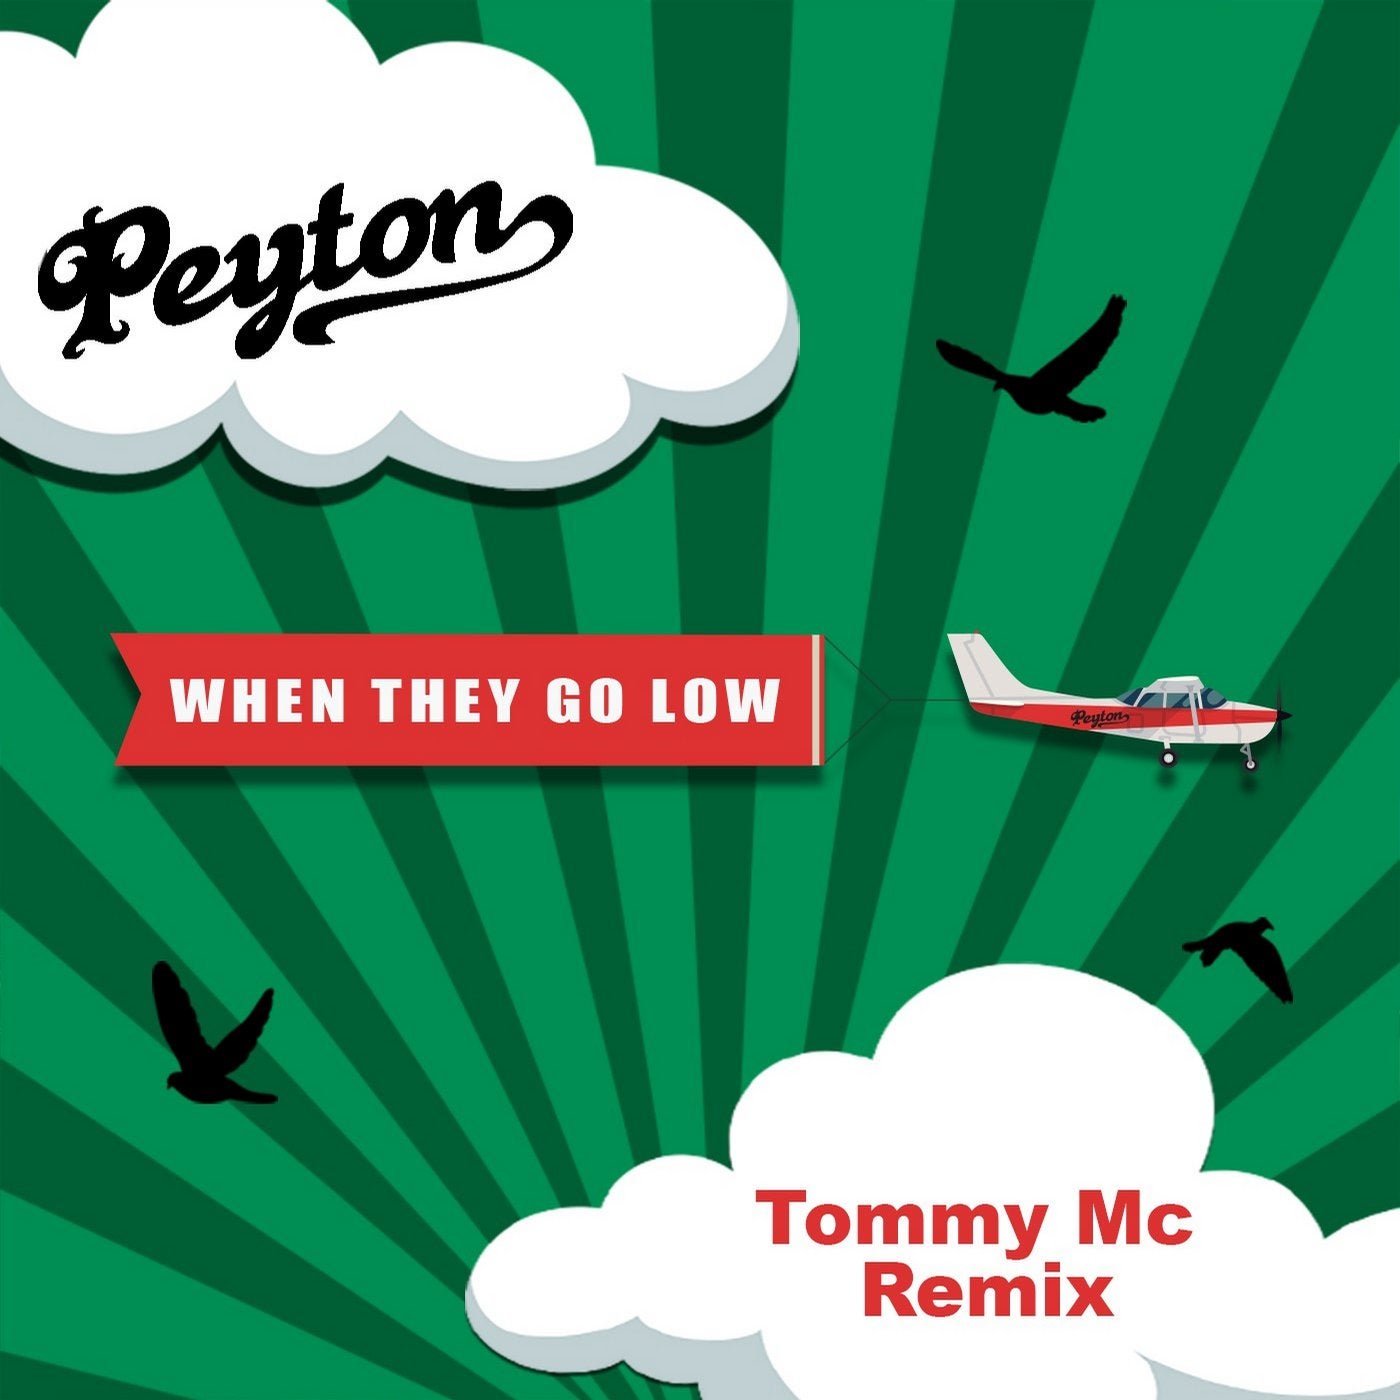 Peyton Music Download Beatport